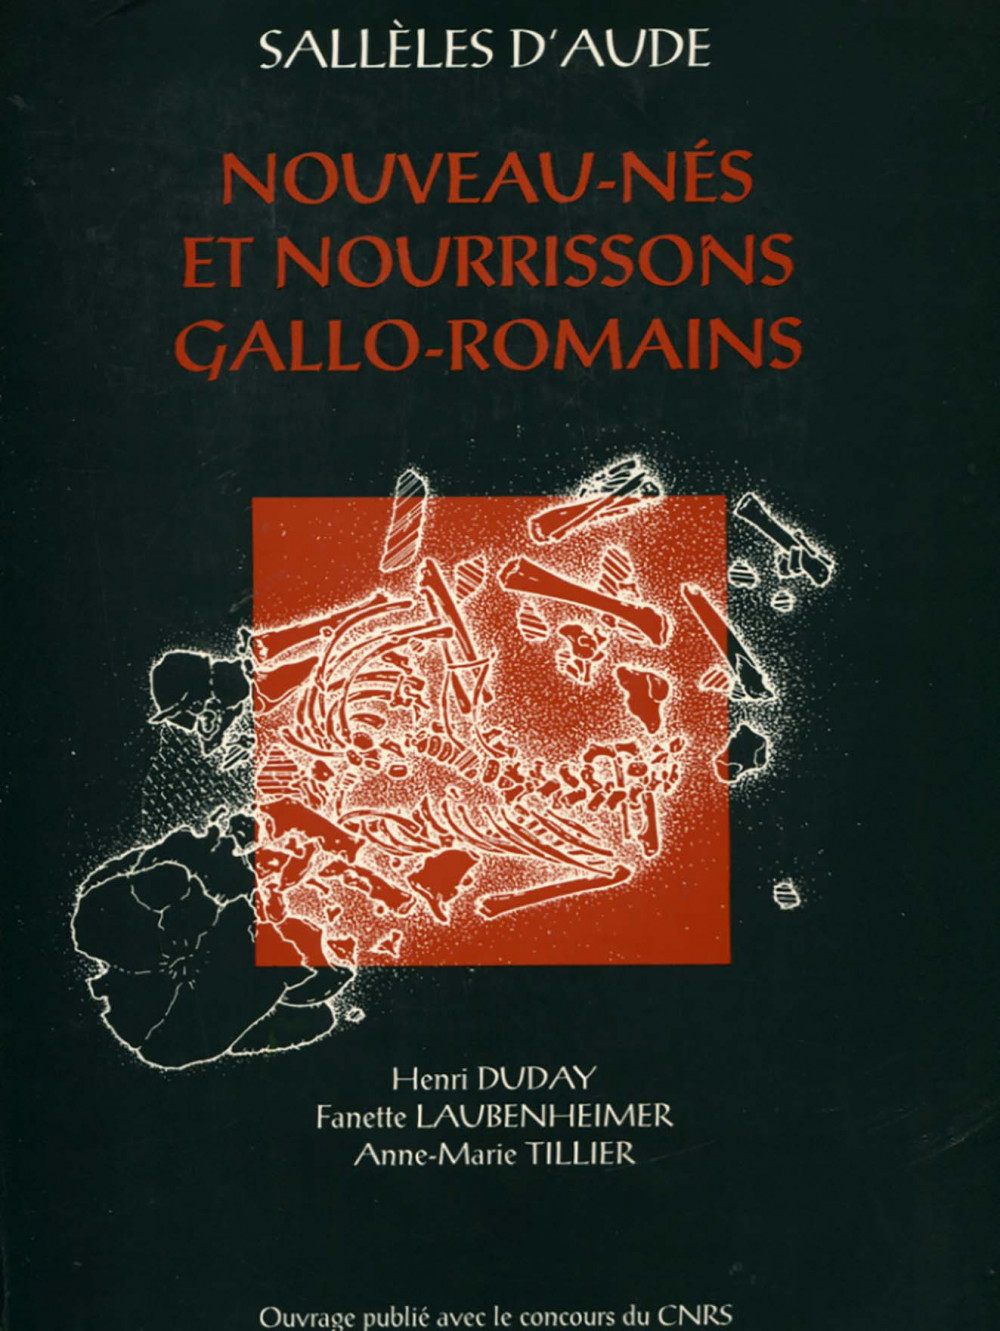 Sallèles d'Aude, Nouveau-nés et nourrissons gallo-romains